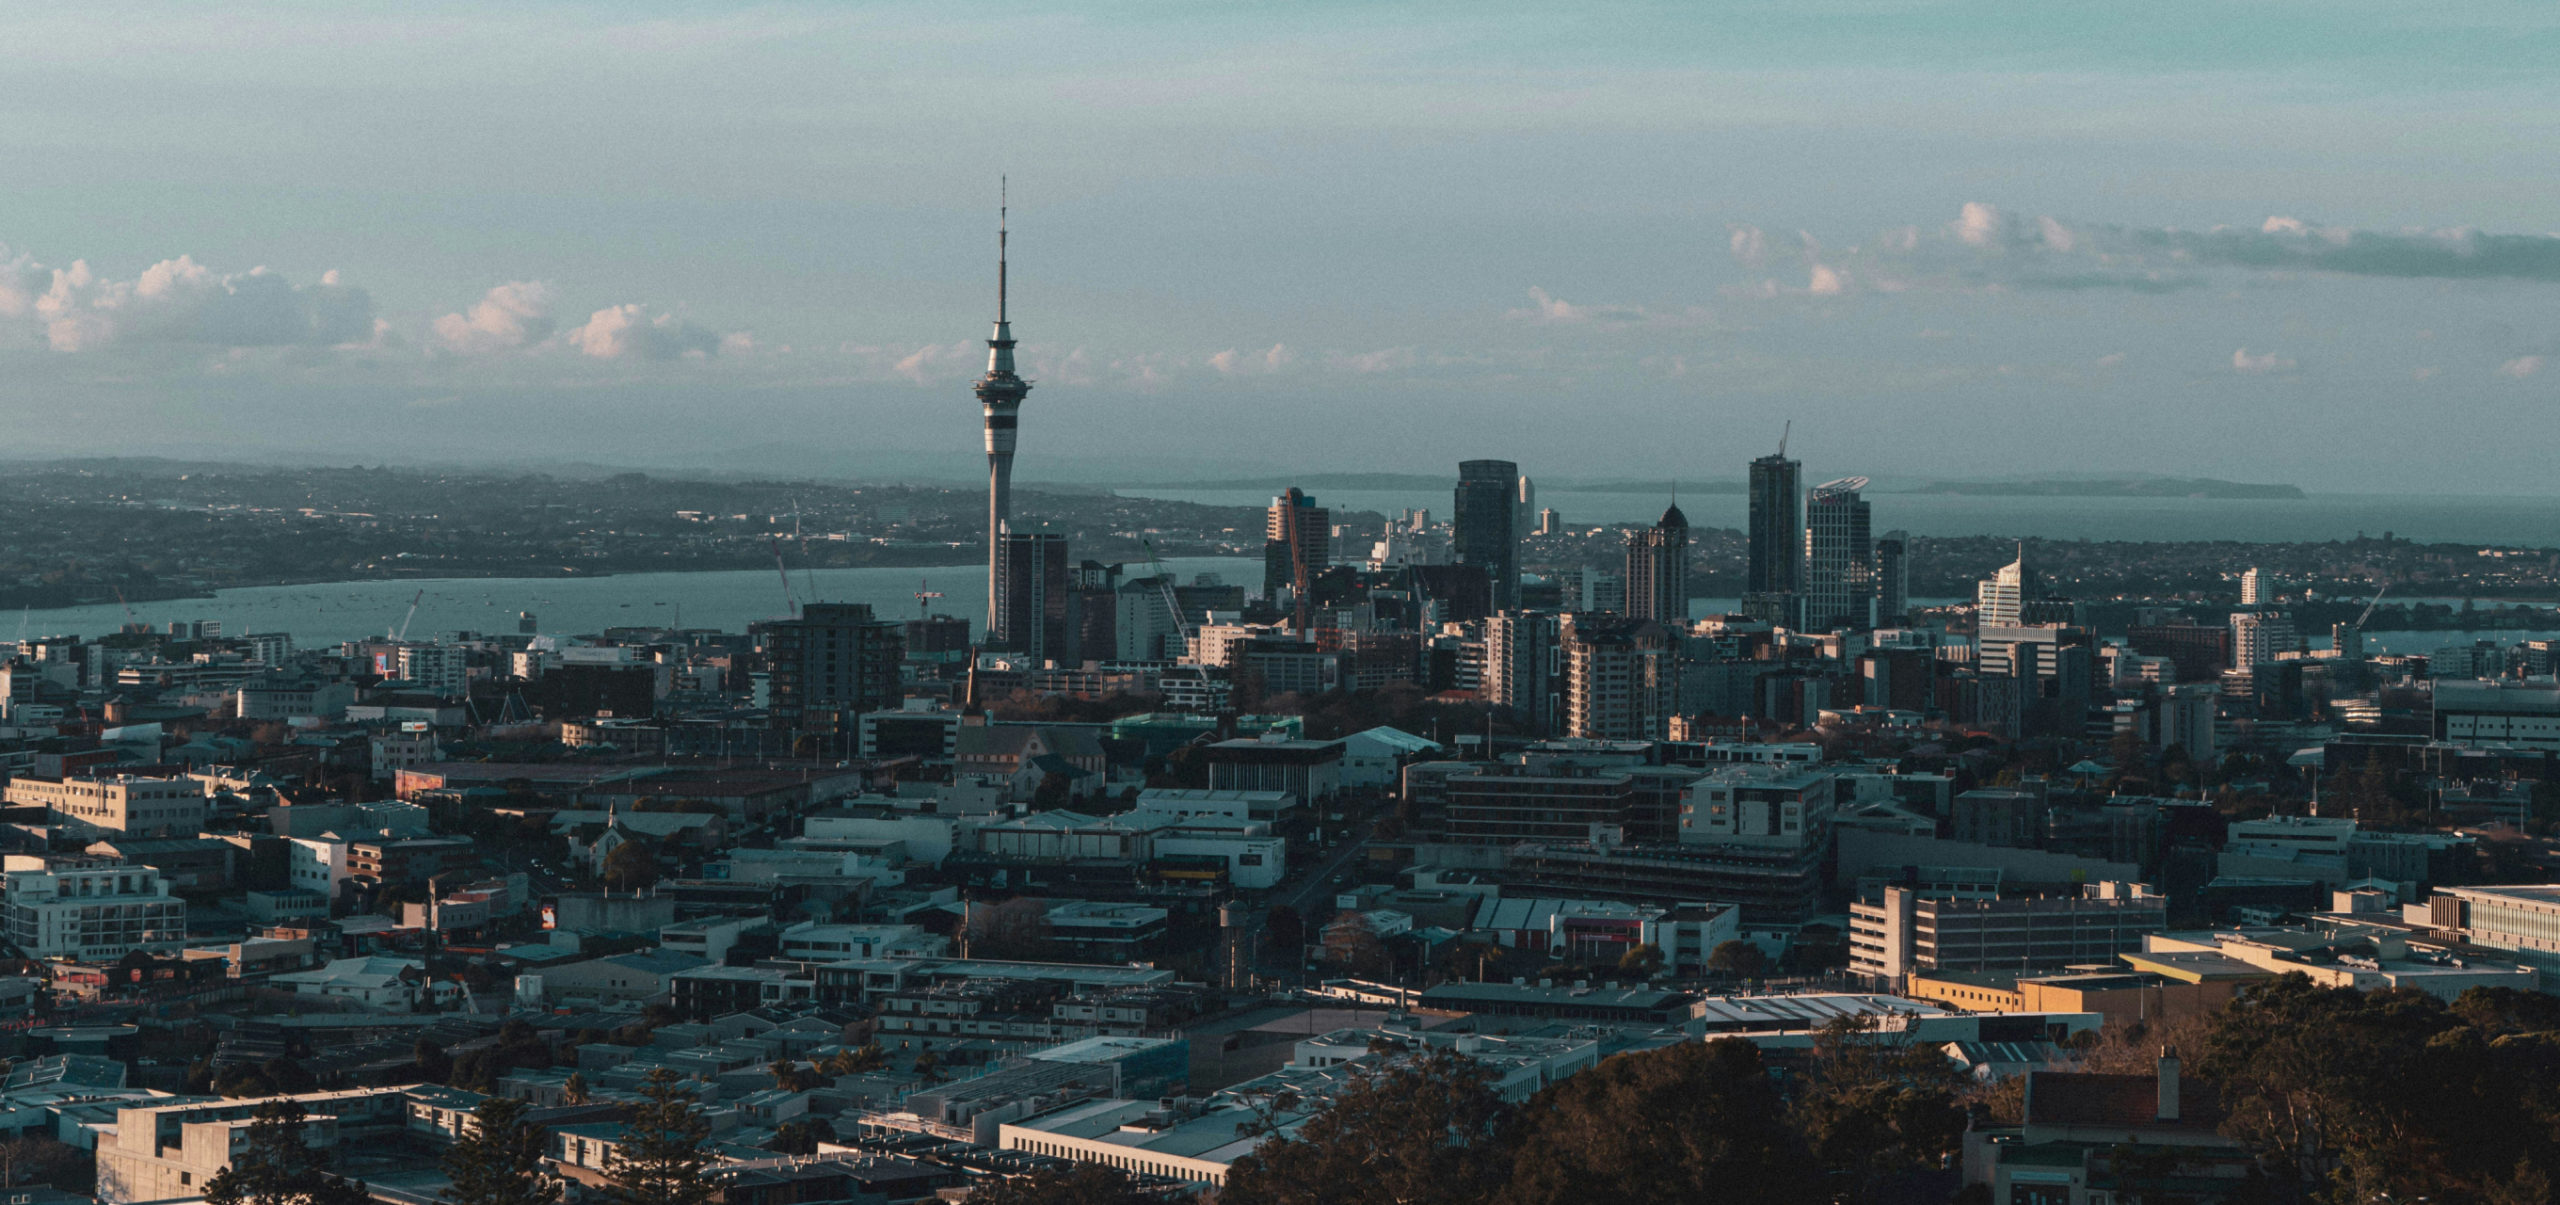 Auckland City Landscape